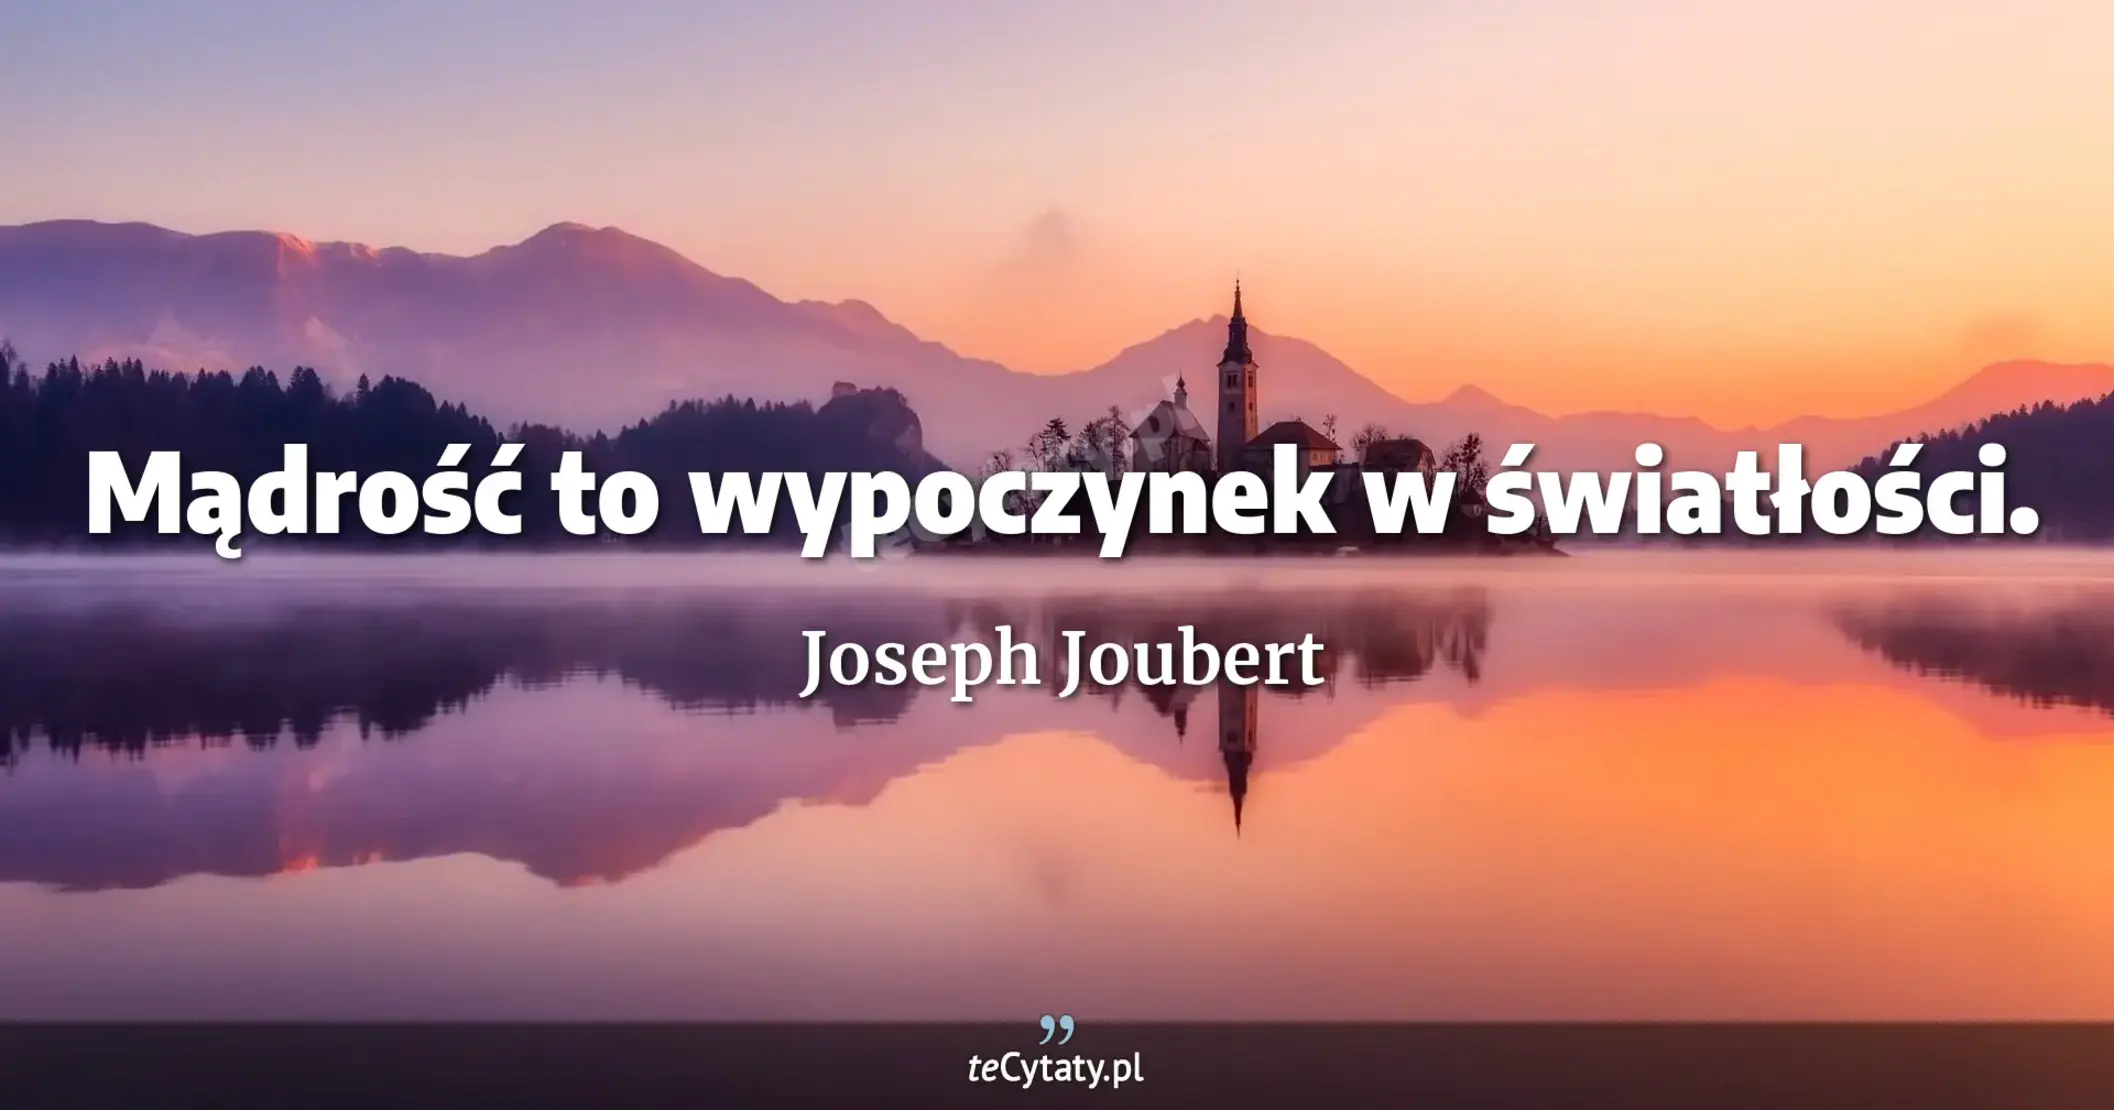 Mądrość to wypoczynek w światłości. - Joseph Joubert